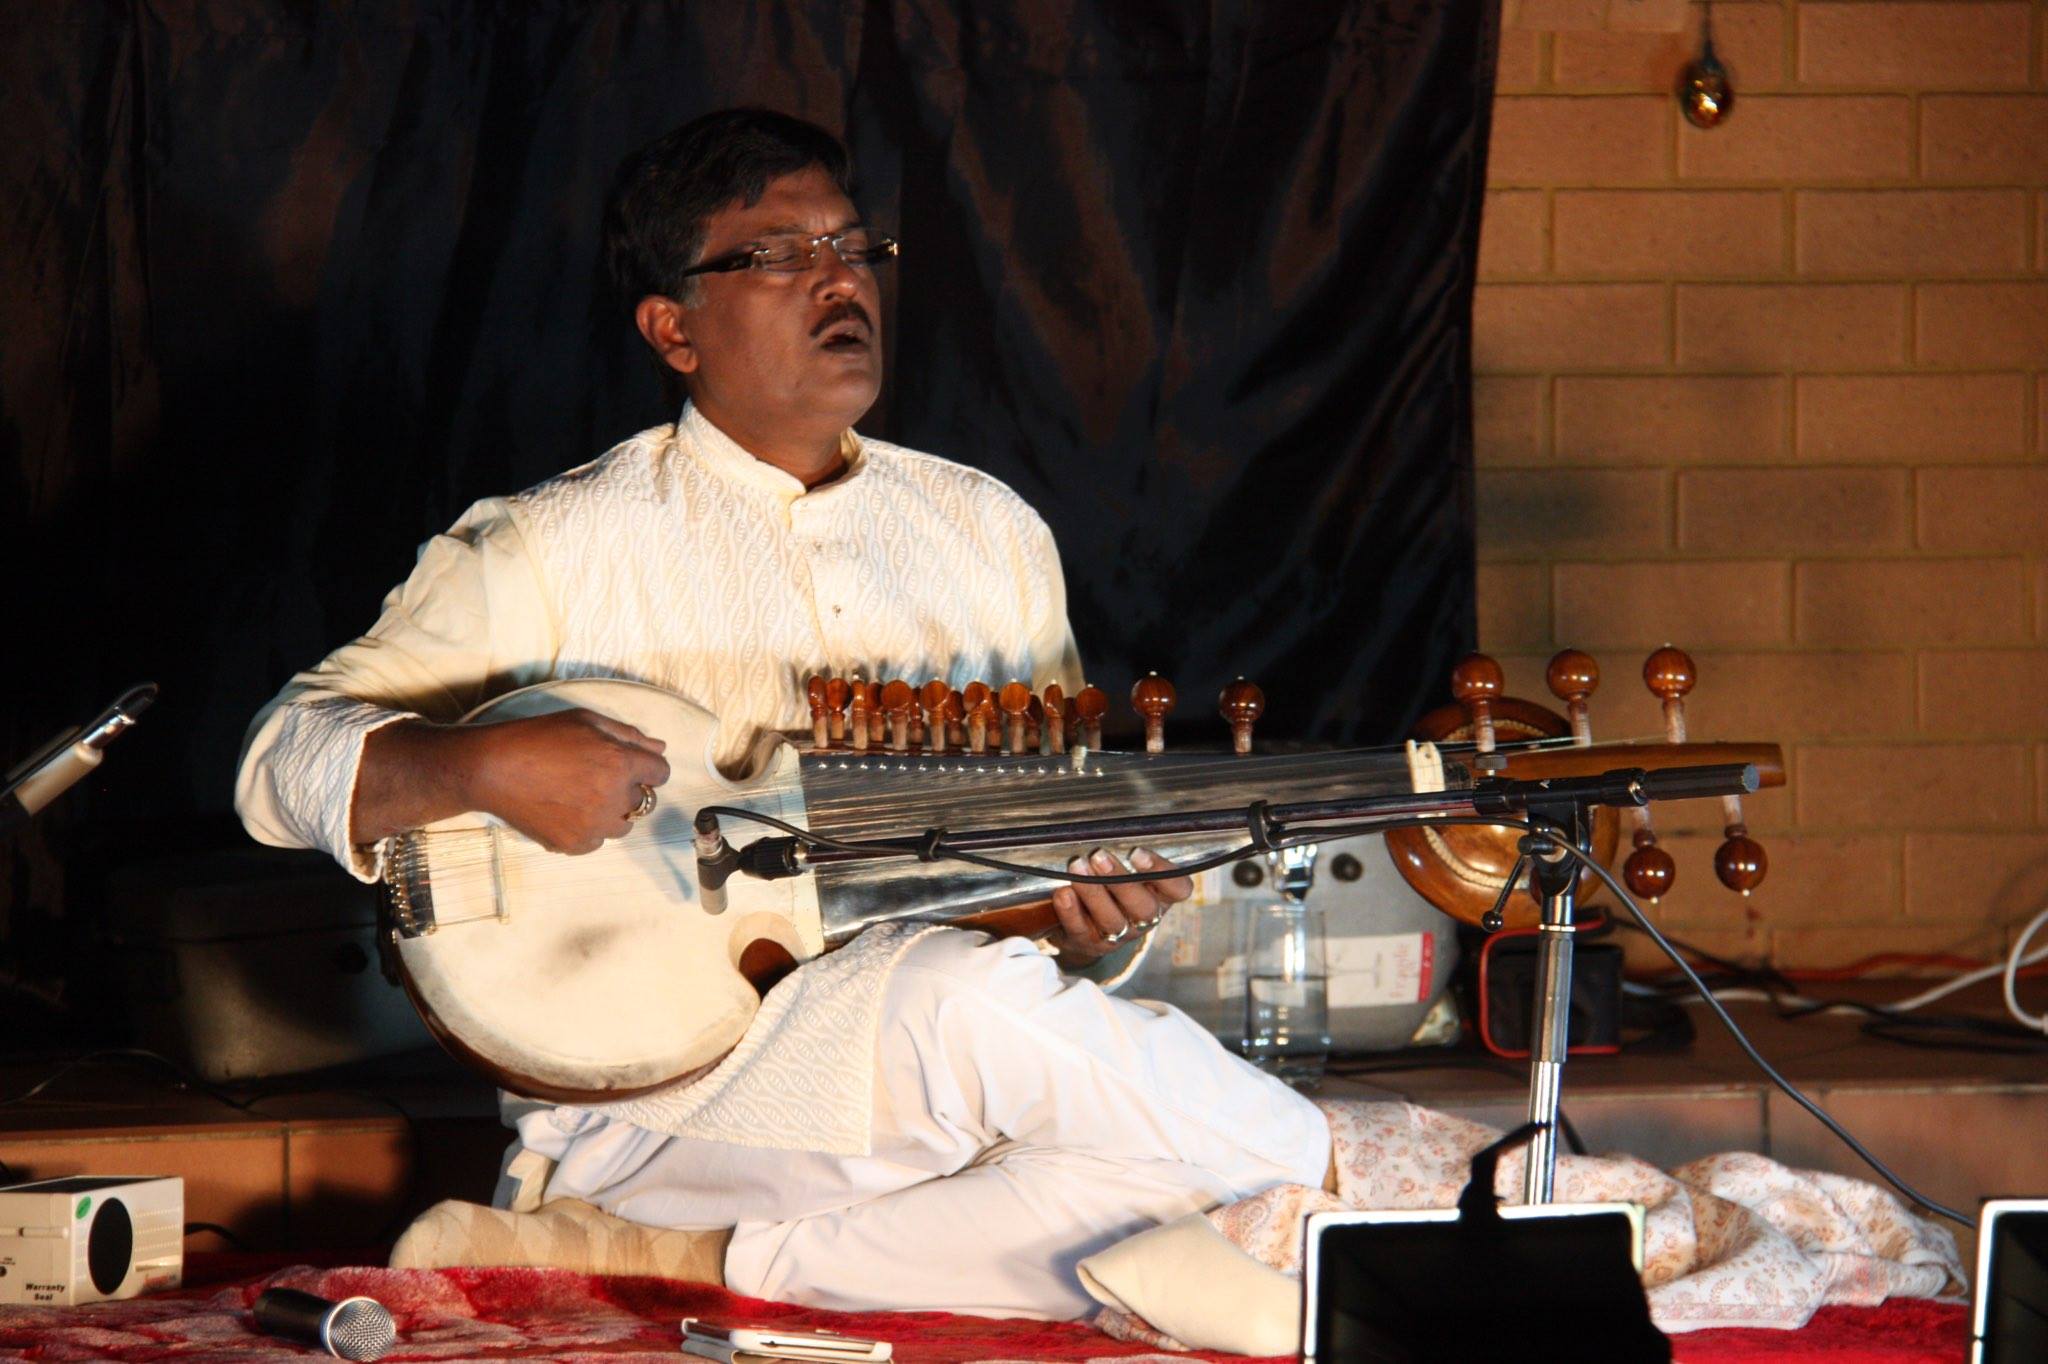 Debashish Bhattacharya playing a music instrument